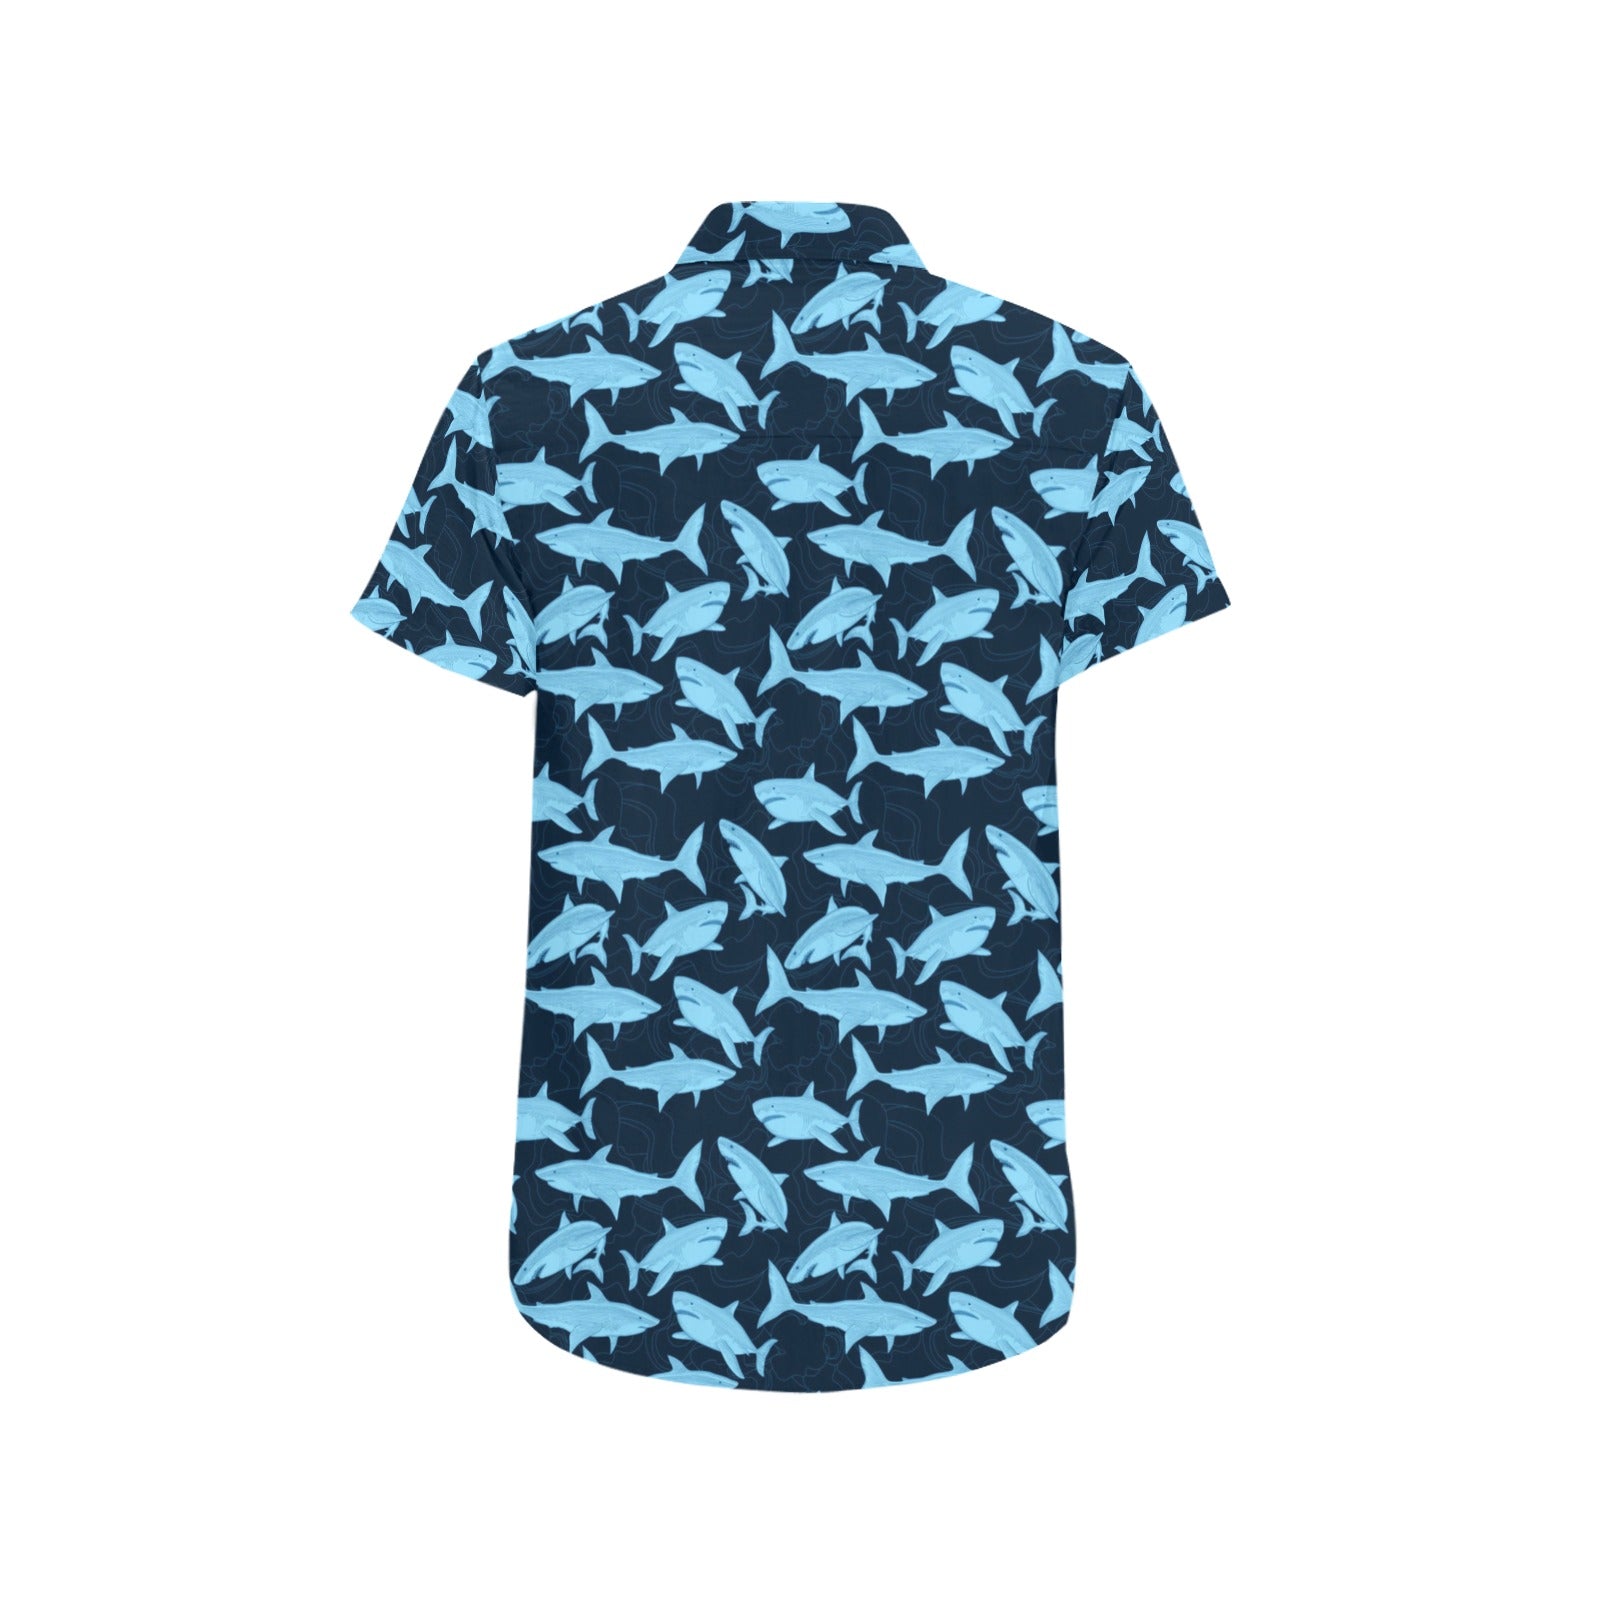 Shark Short Sleeve Men Button Up Shirt, Fish Blue Print Casual Buttoned Down Summer Dress Shirt Gift Husband Starcove Fashion